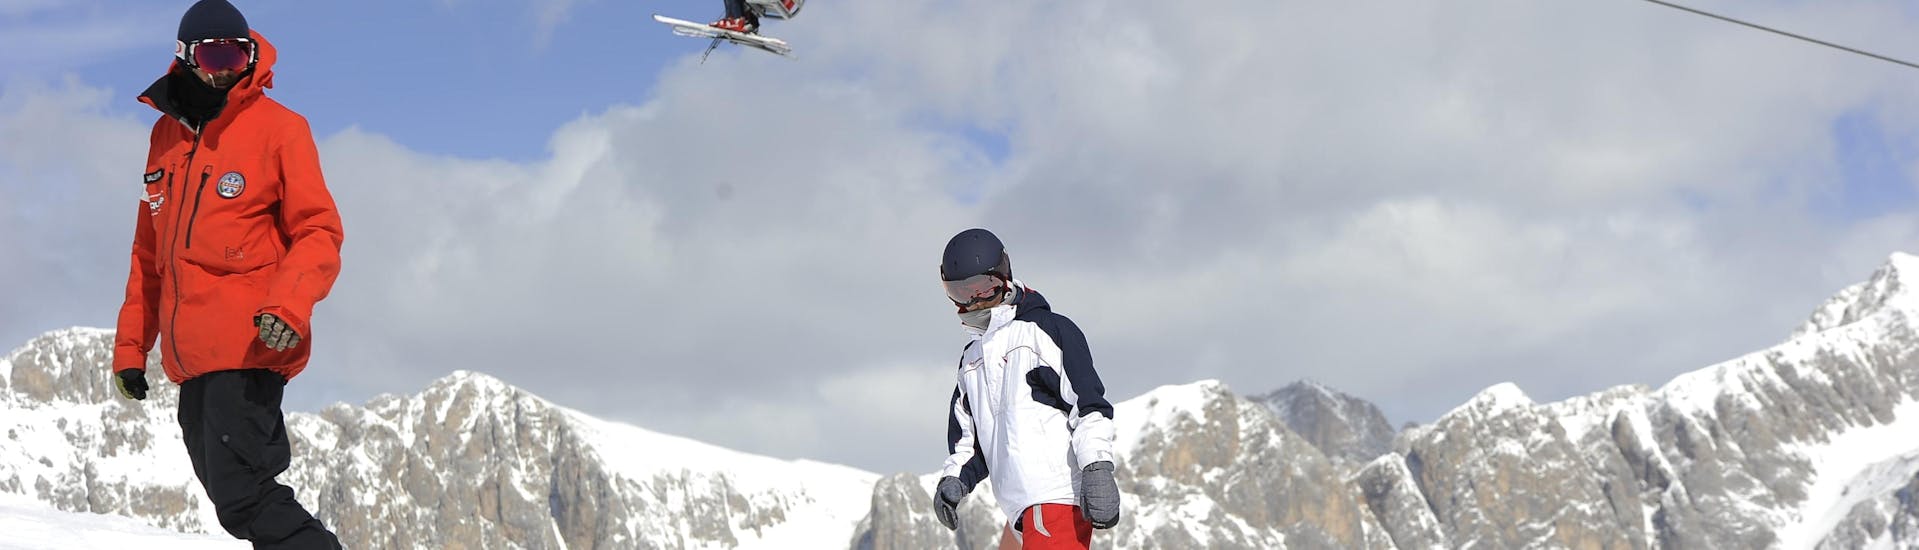 Snowboarders op de pistes in Falcade tijdens een van de privé snowboardlessen voor kinderen en volwassenen van alle niveaus.